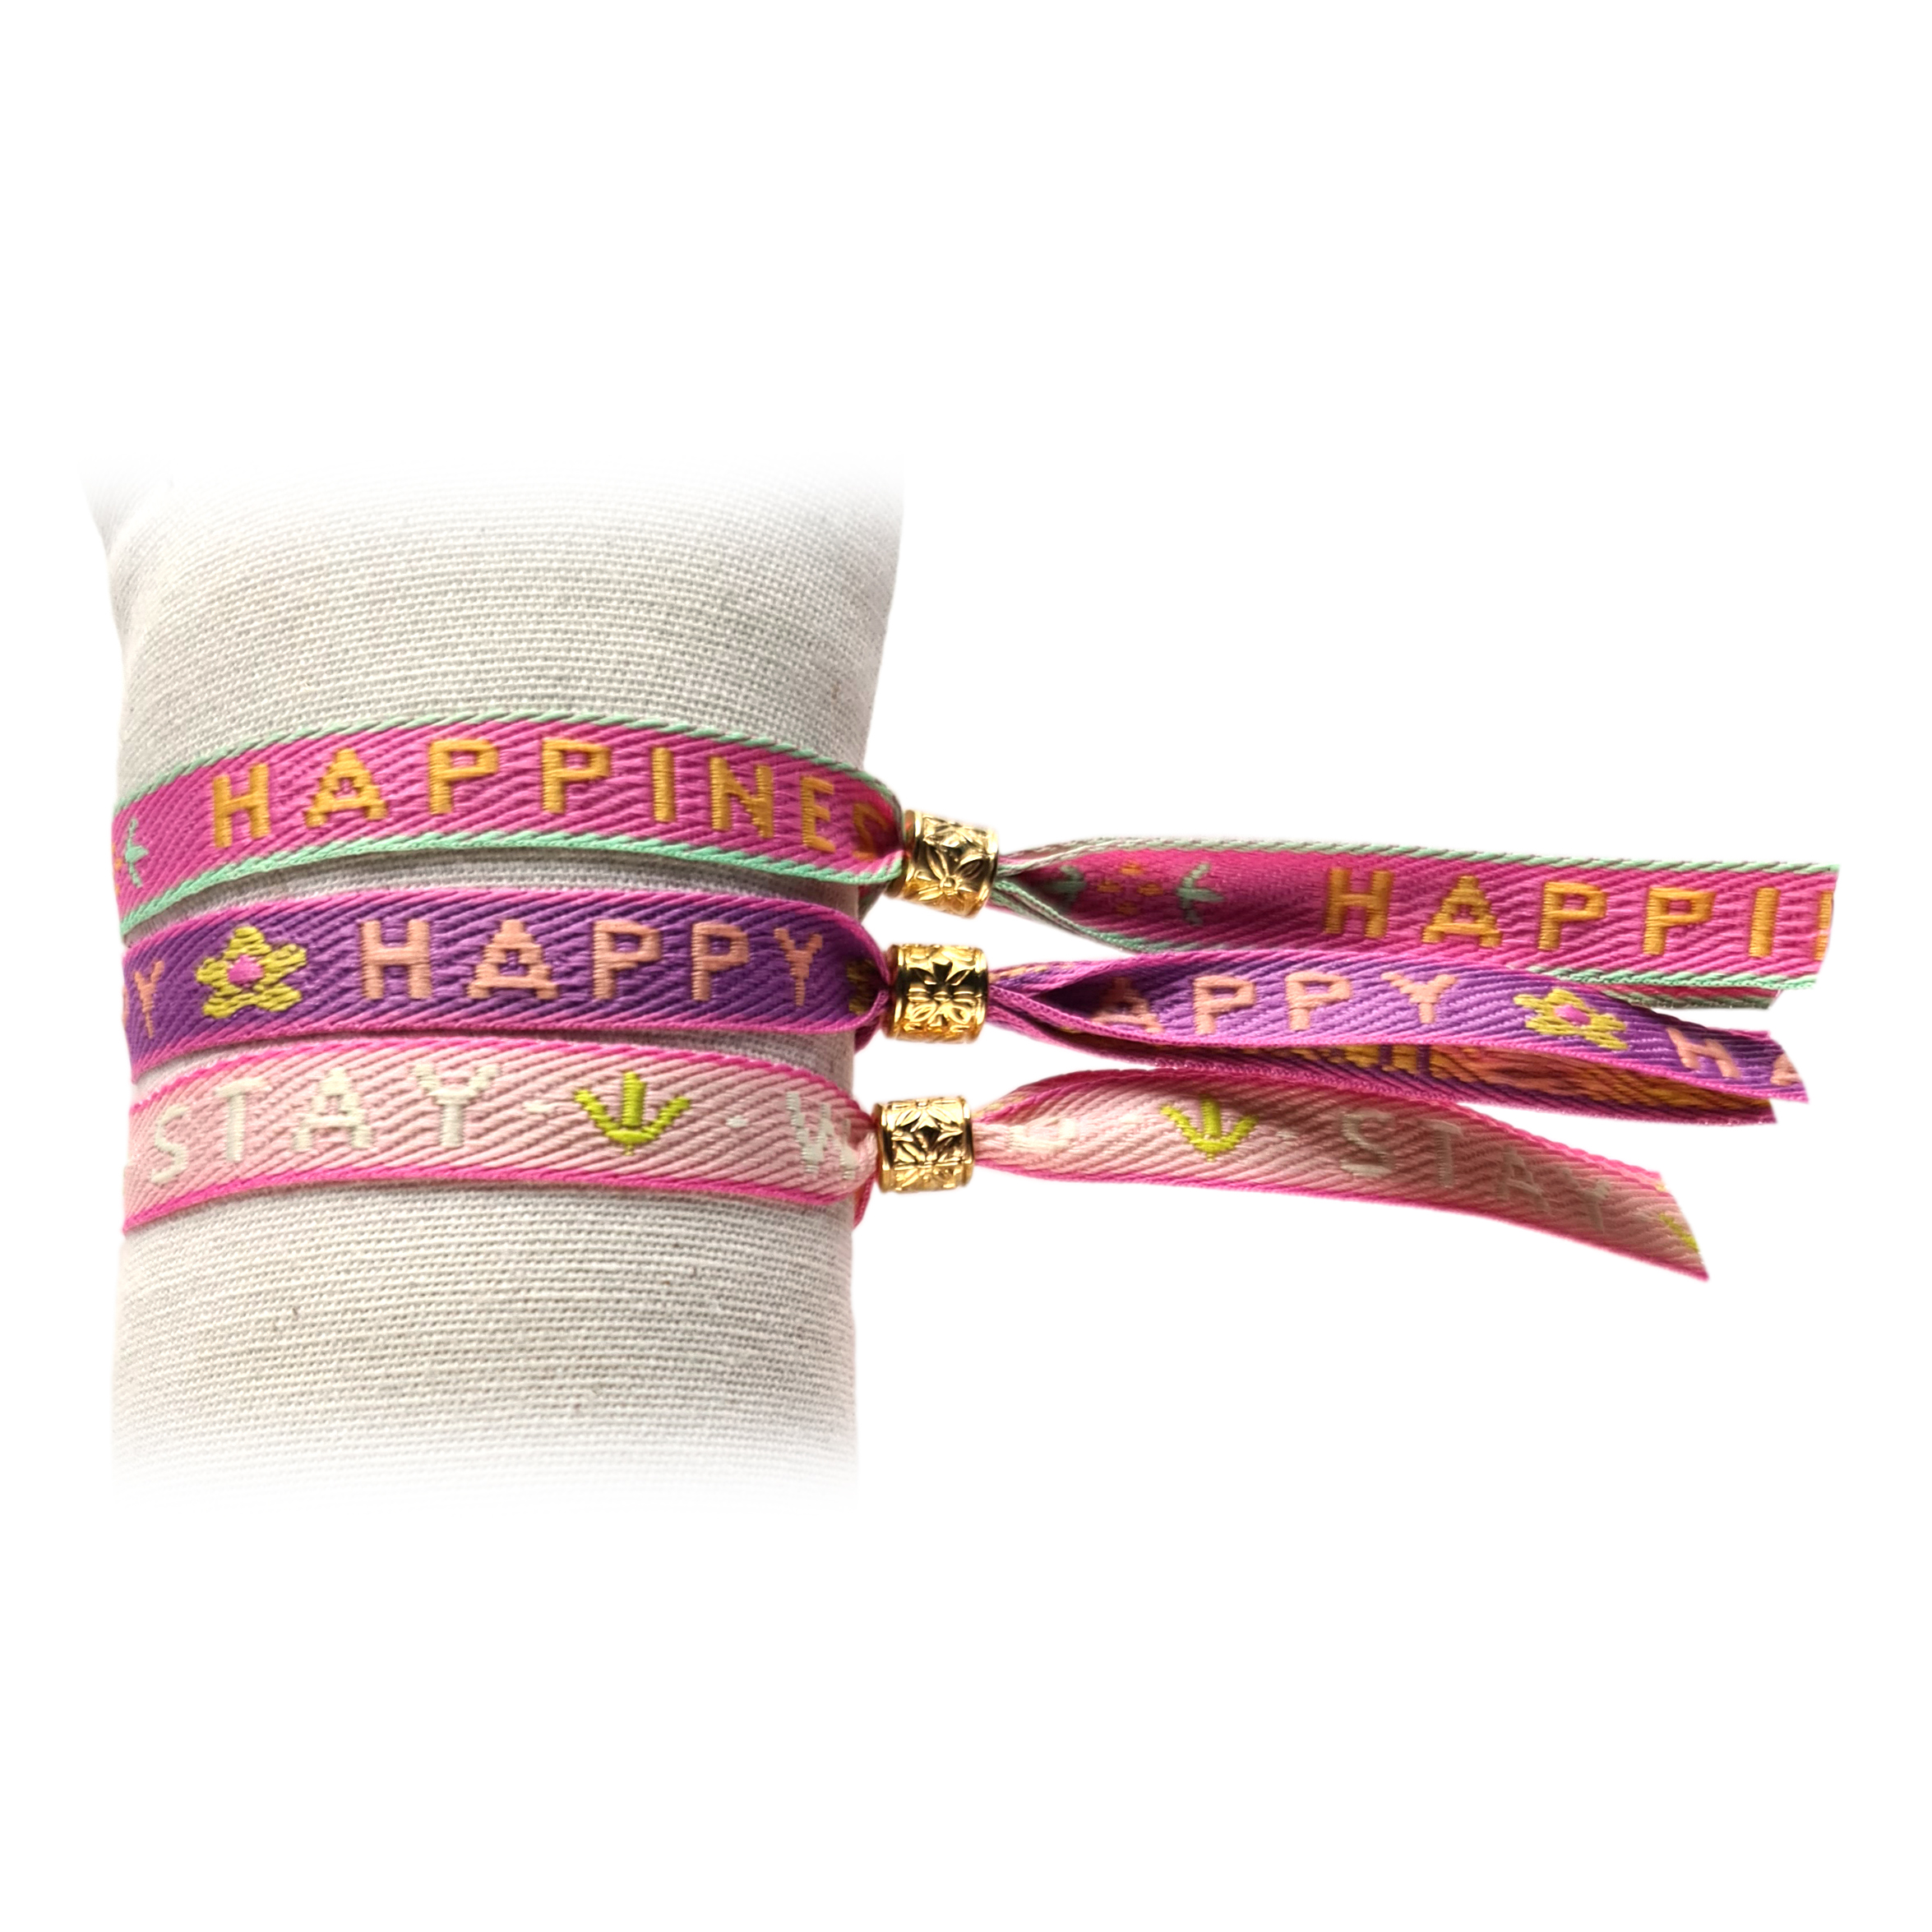 Principessa set van 3 trendy Festival lint armbandjes met tekstlint – Tekst: Happiness, Happy, Stay Wild – Kleur: Roze, Paars, Lichtroze